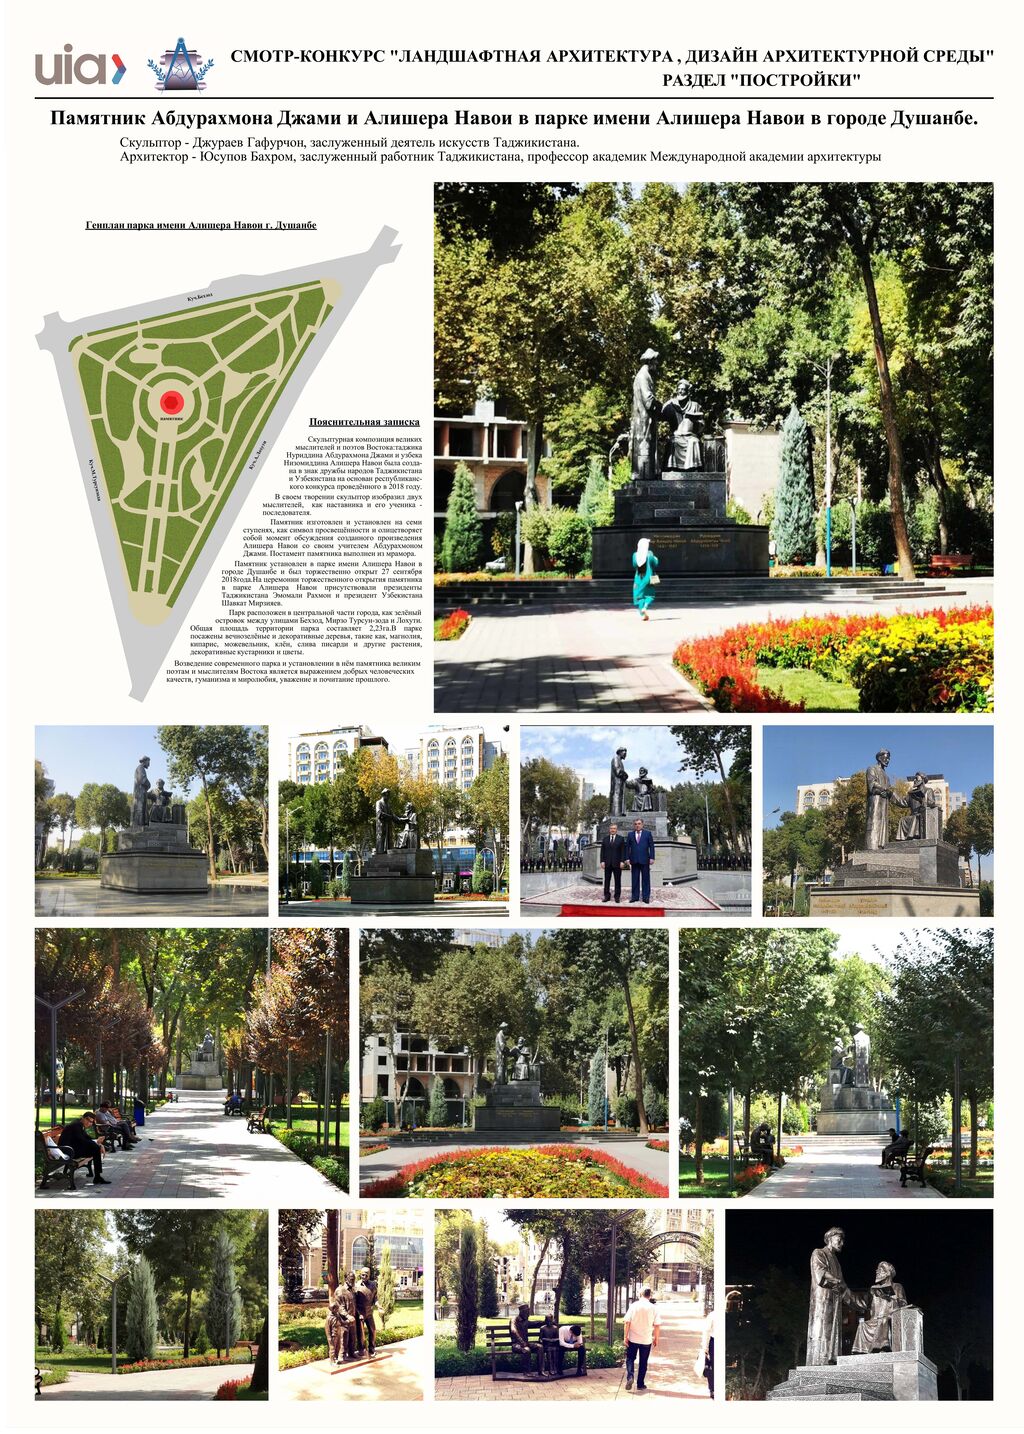 38.Памятник А.Джами и А.Навои, г.Душанбе, Таджикистан